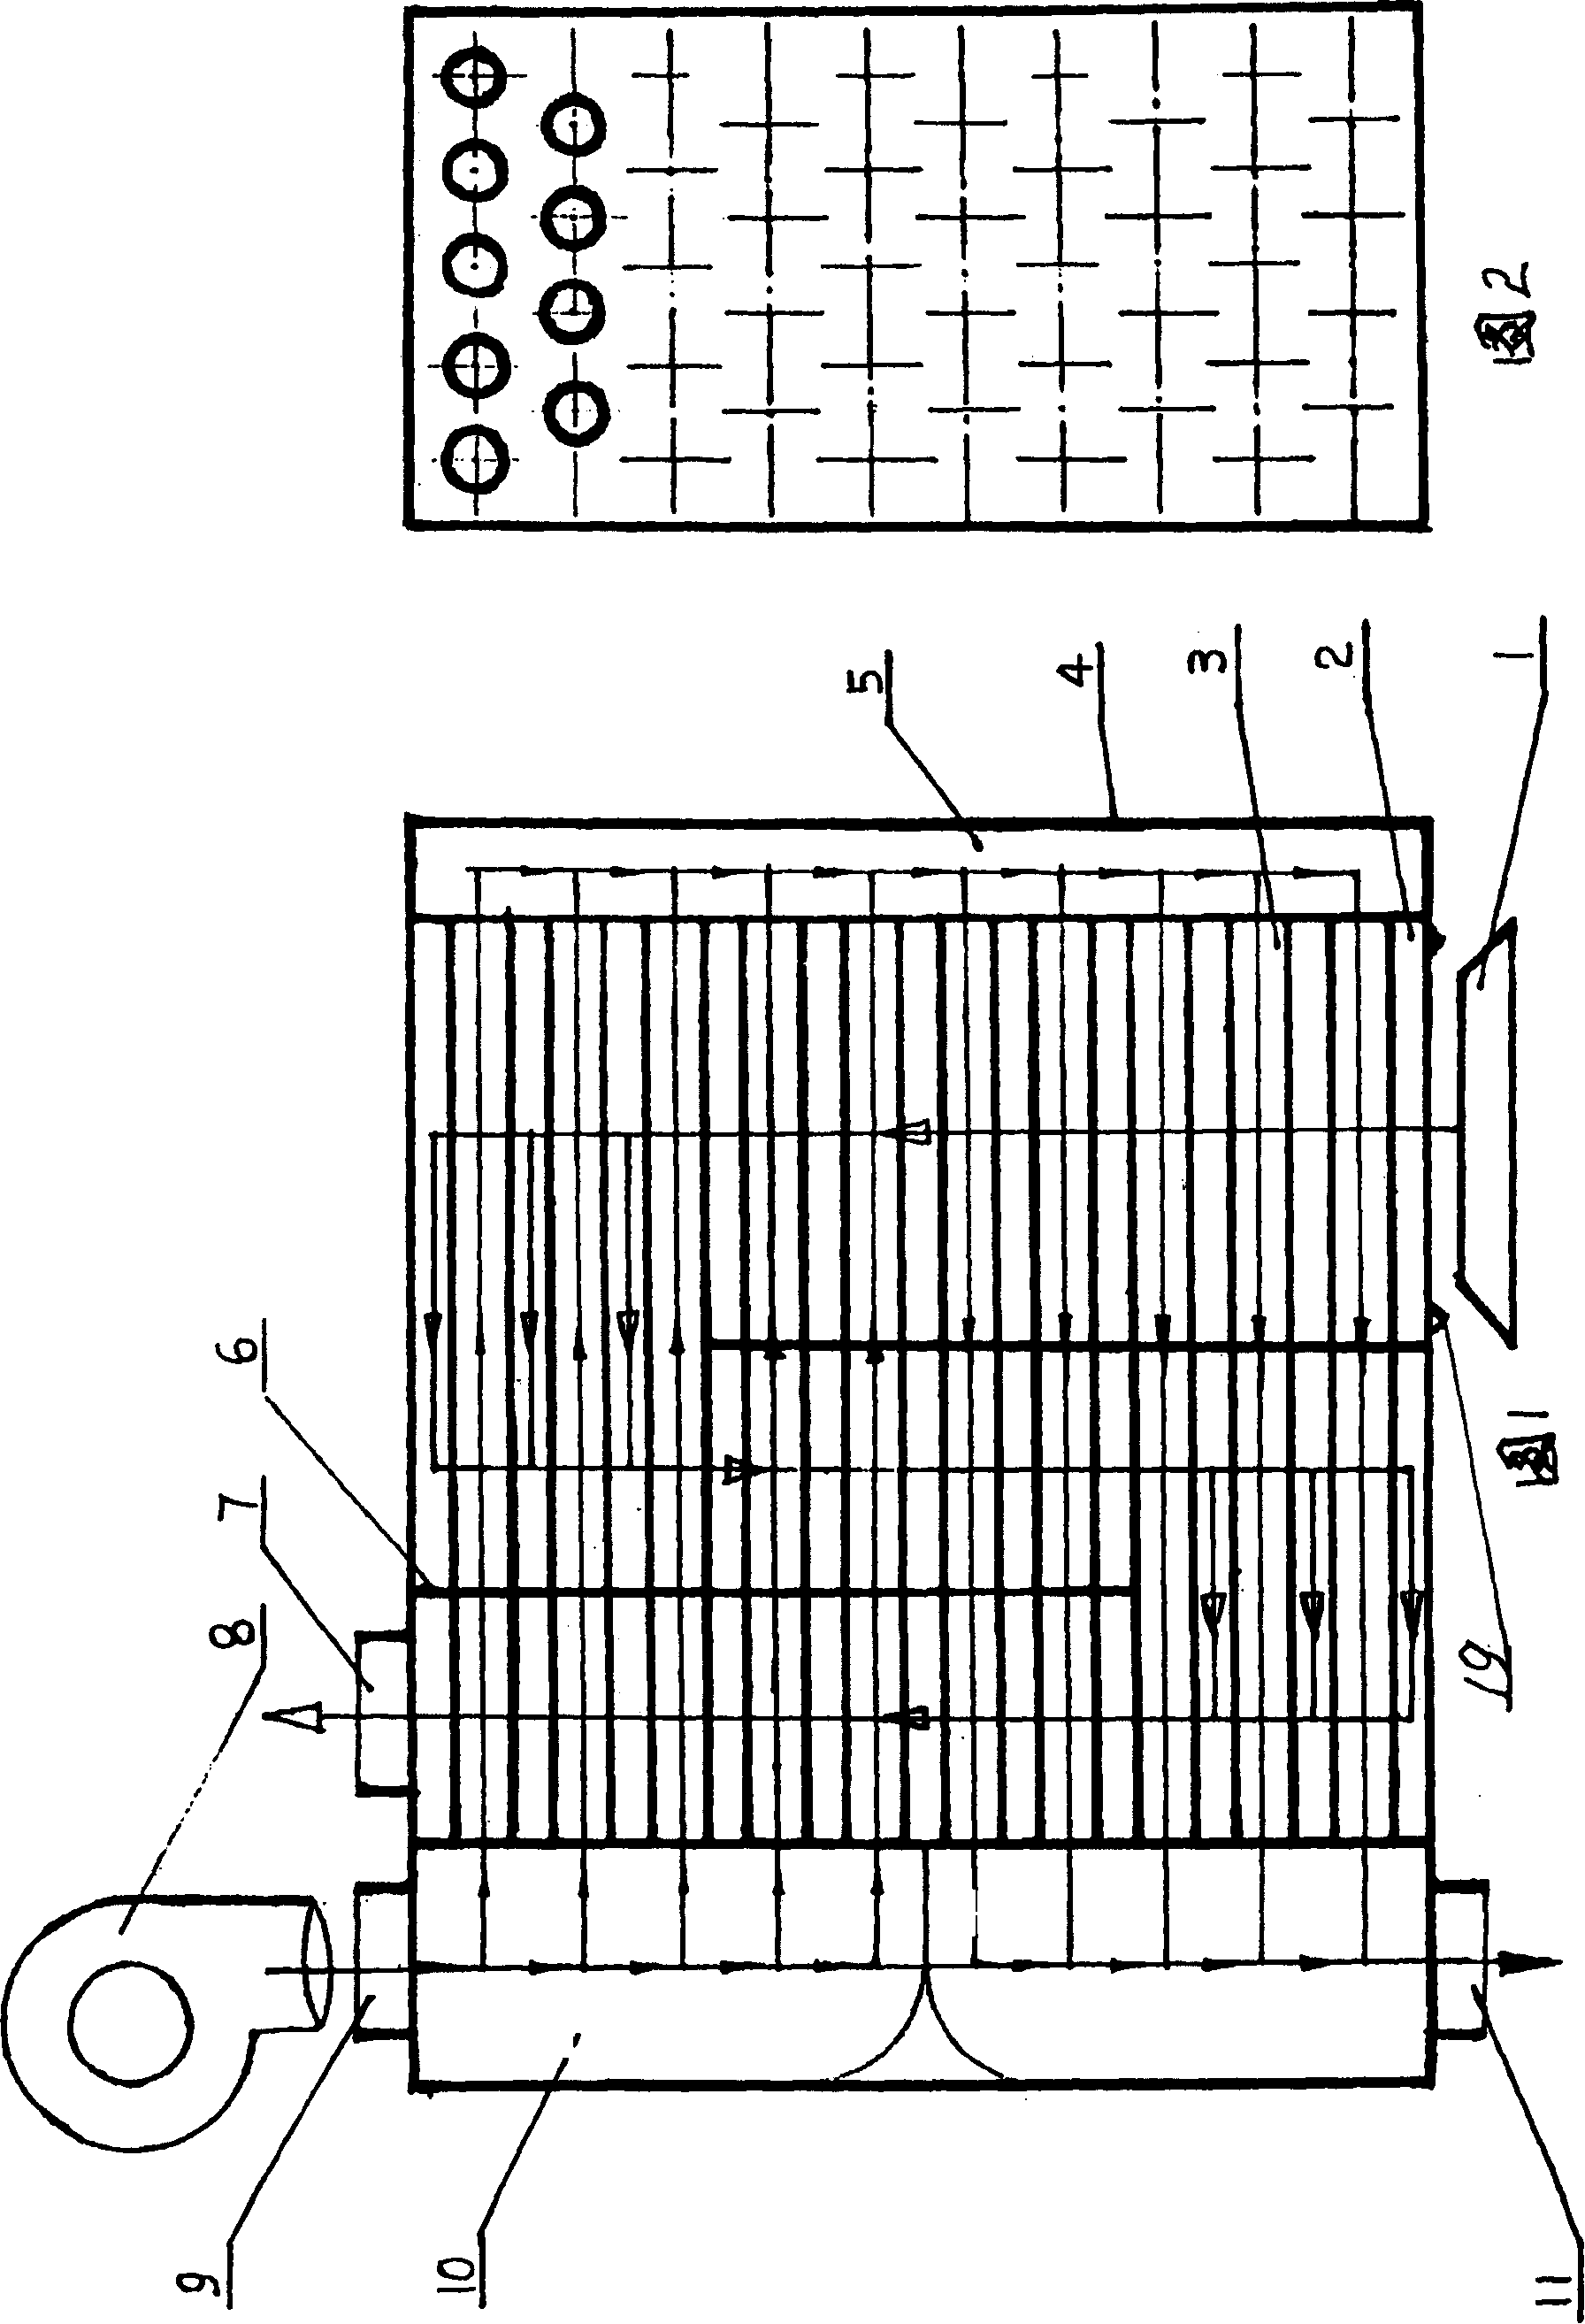 Wind exchange radiator